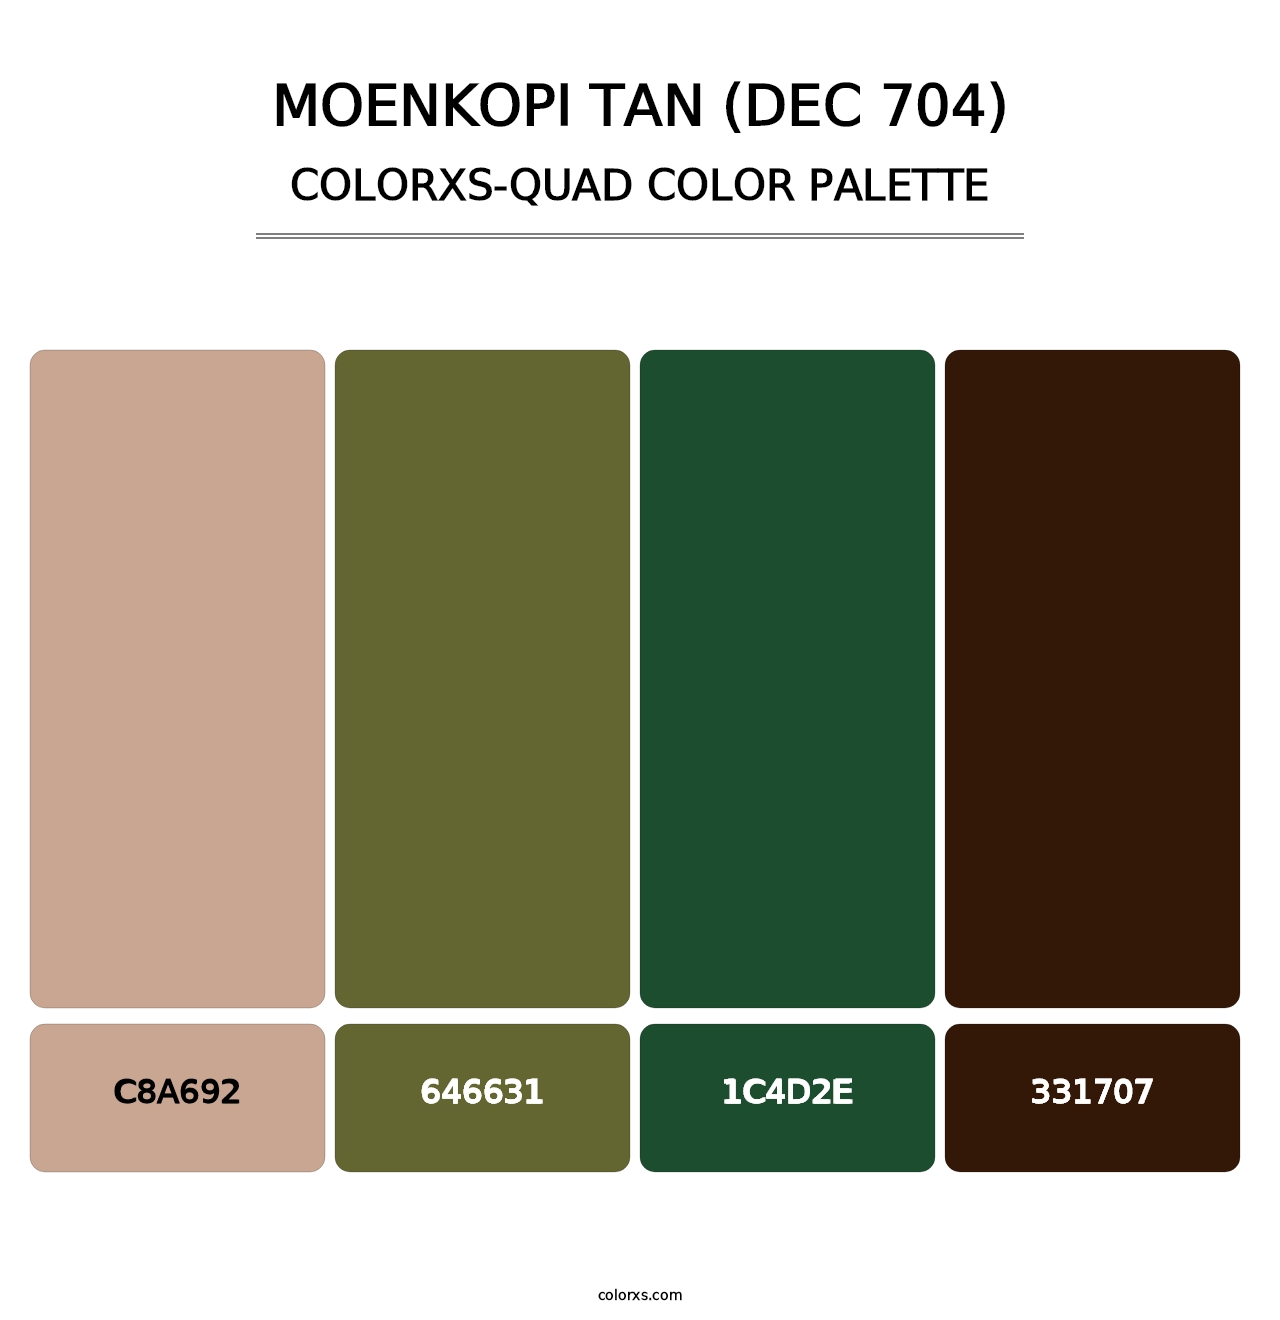 Moenkopi Tan (DEC 704) - Colorxs Quad Palette